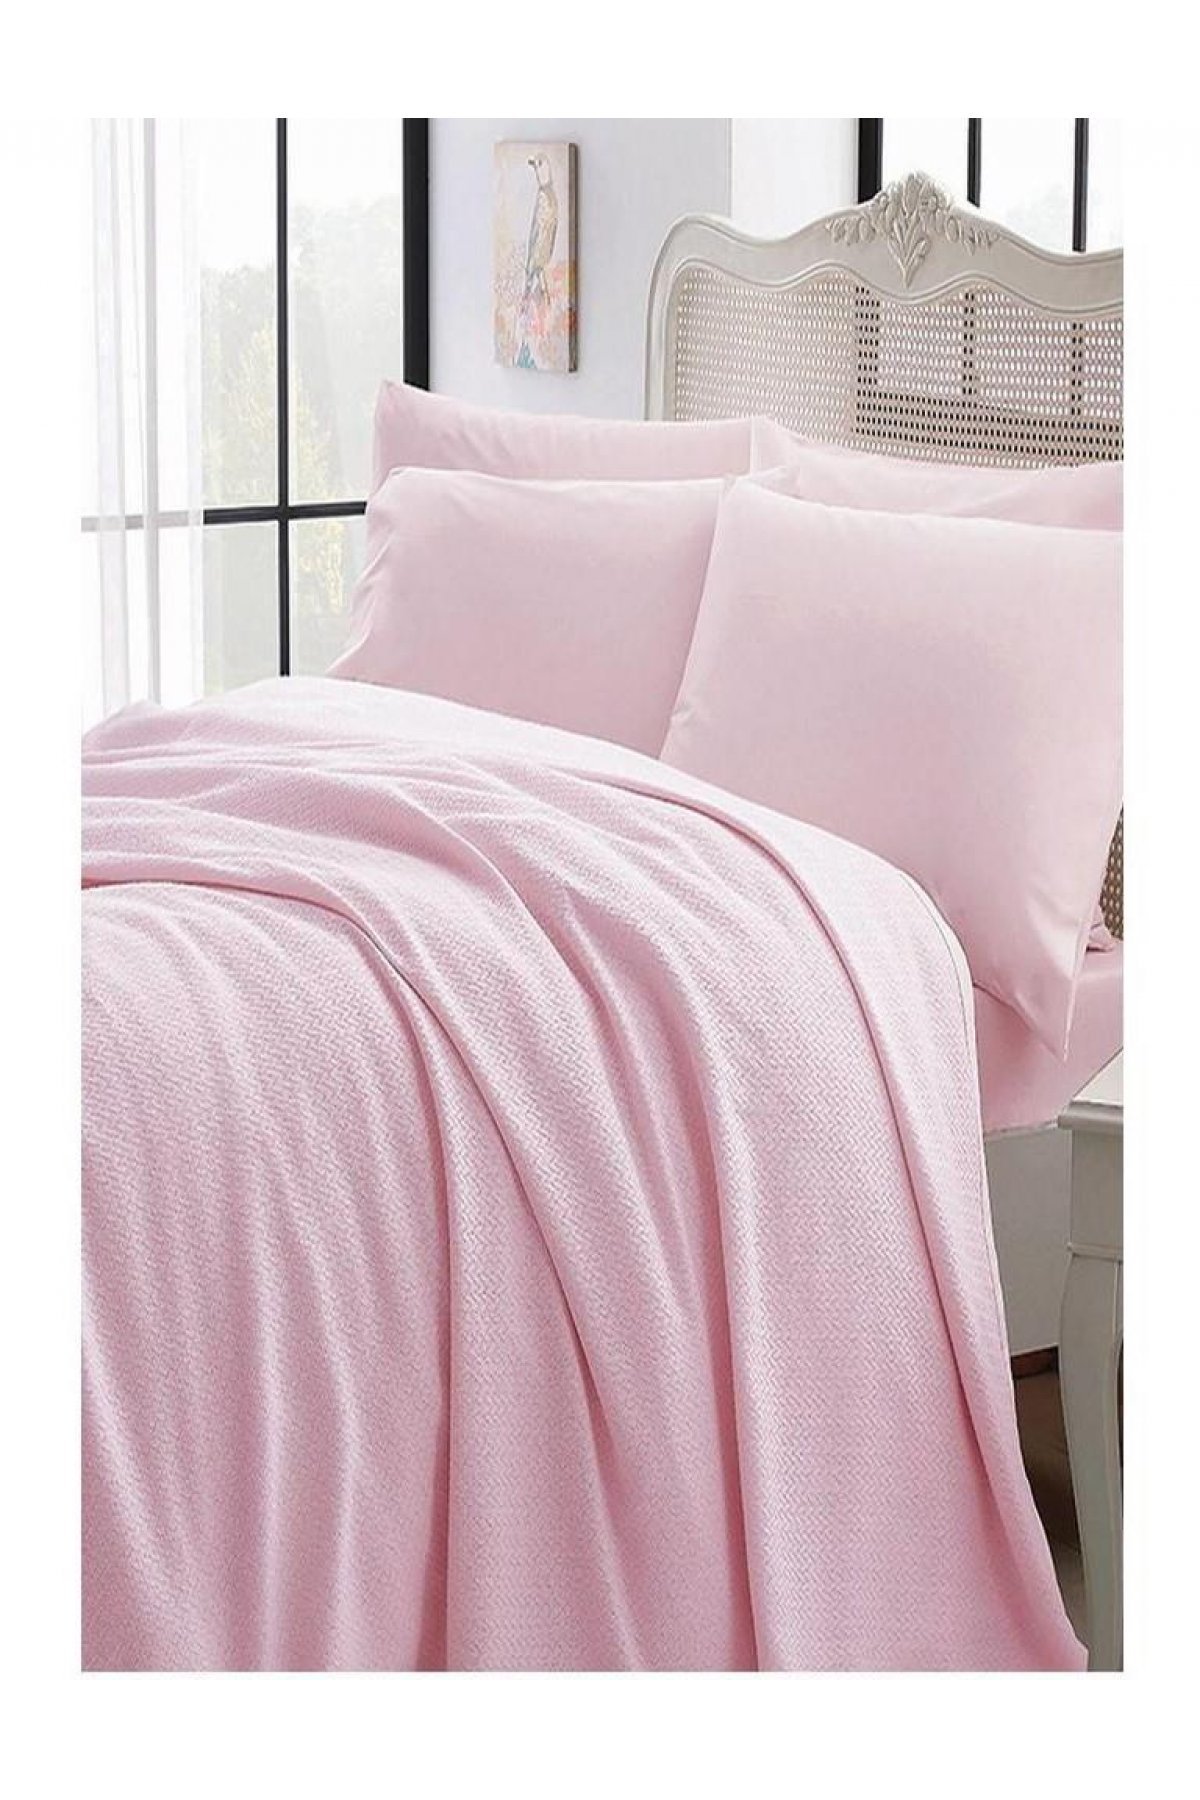 Bedding-powder pink